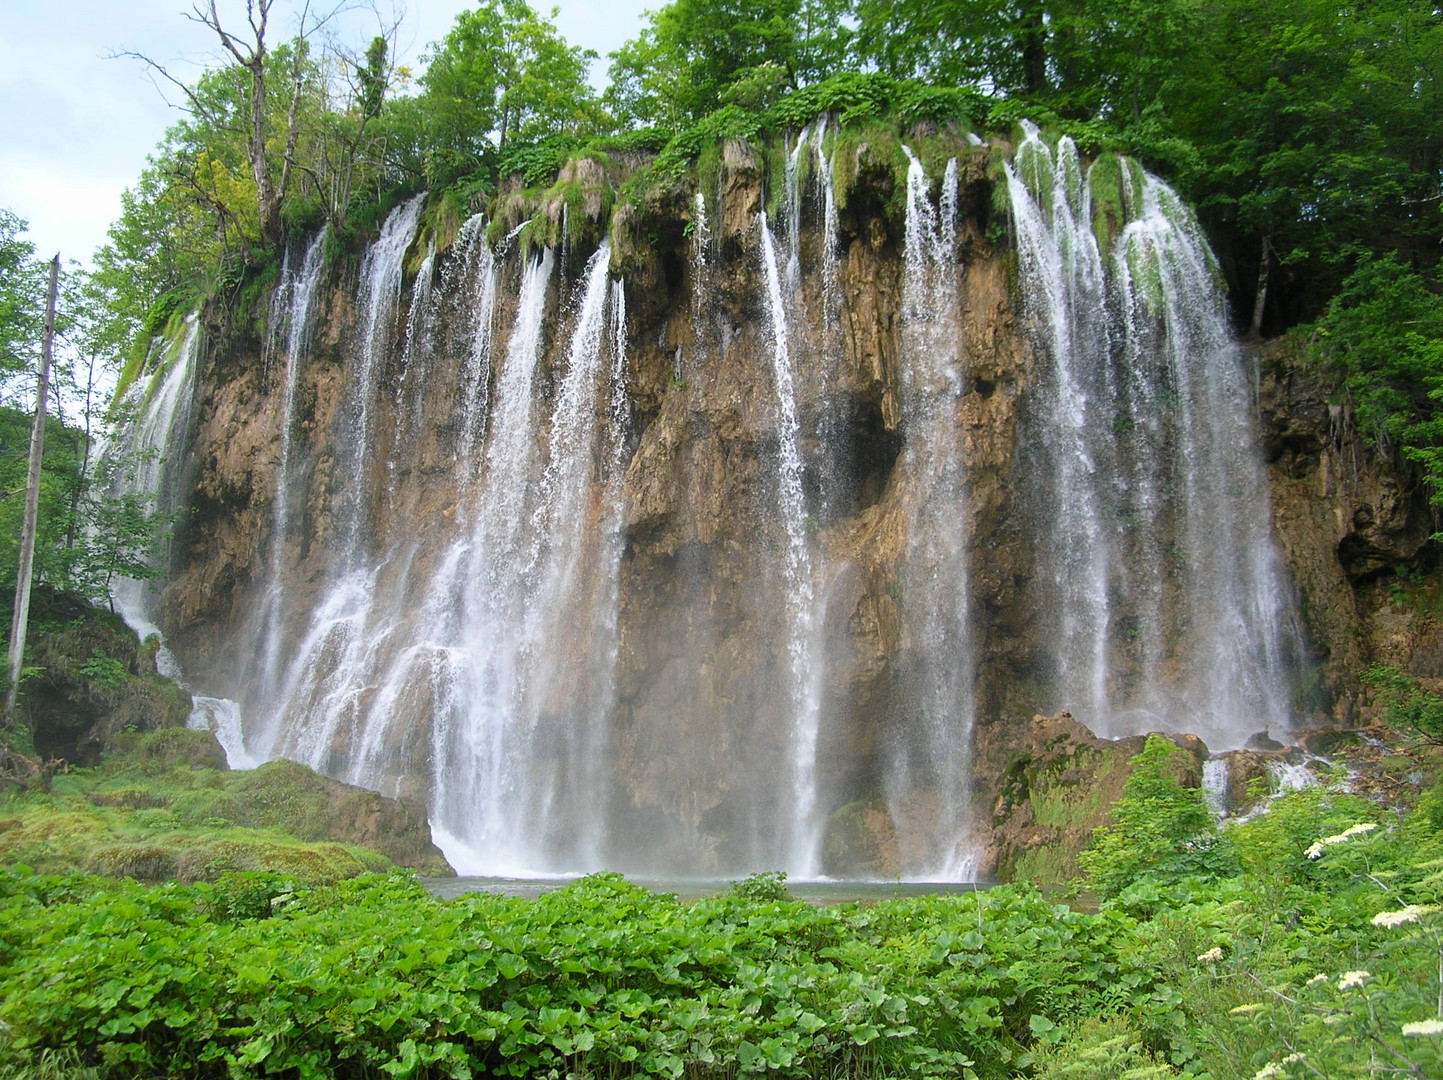 Kroatien / Plitvicer Seen #8